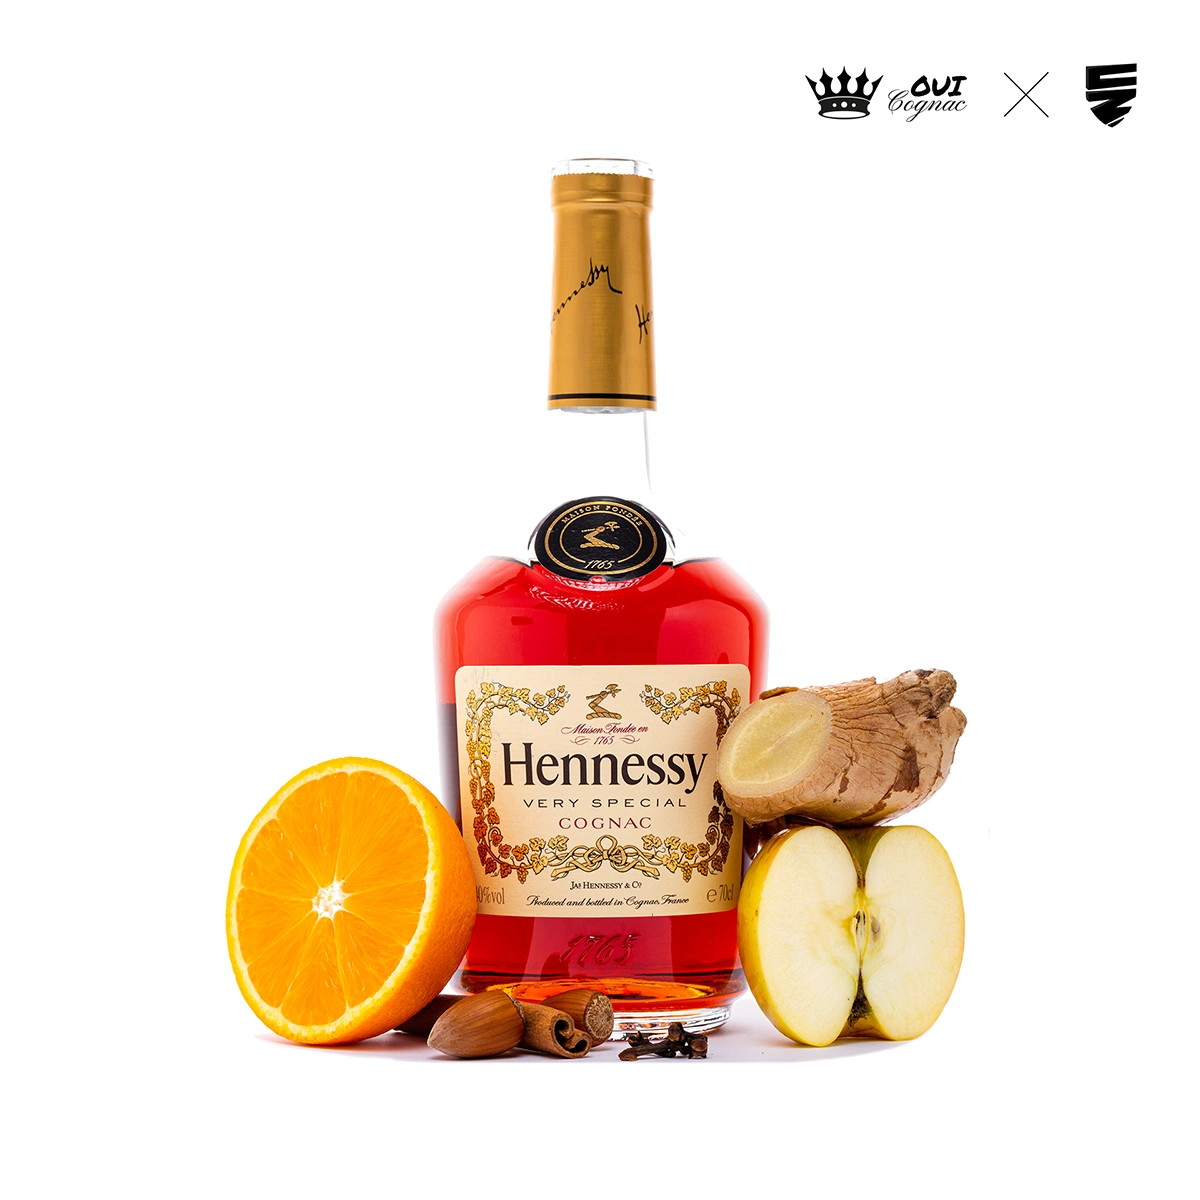 Hennessy VS cognac packshot